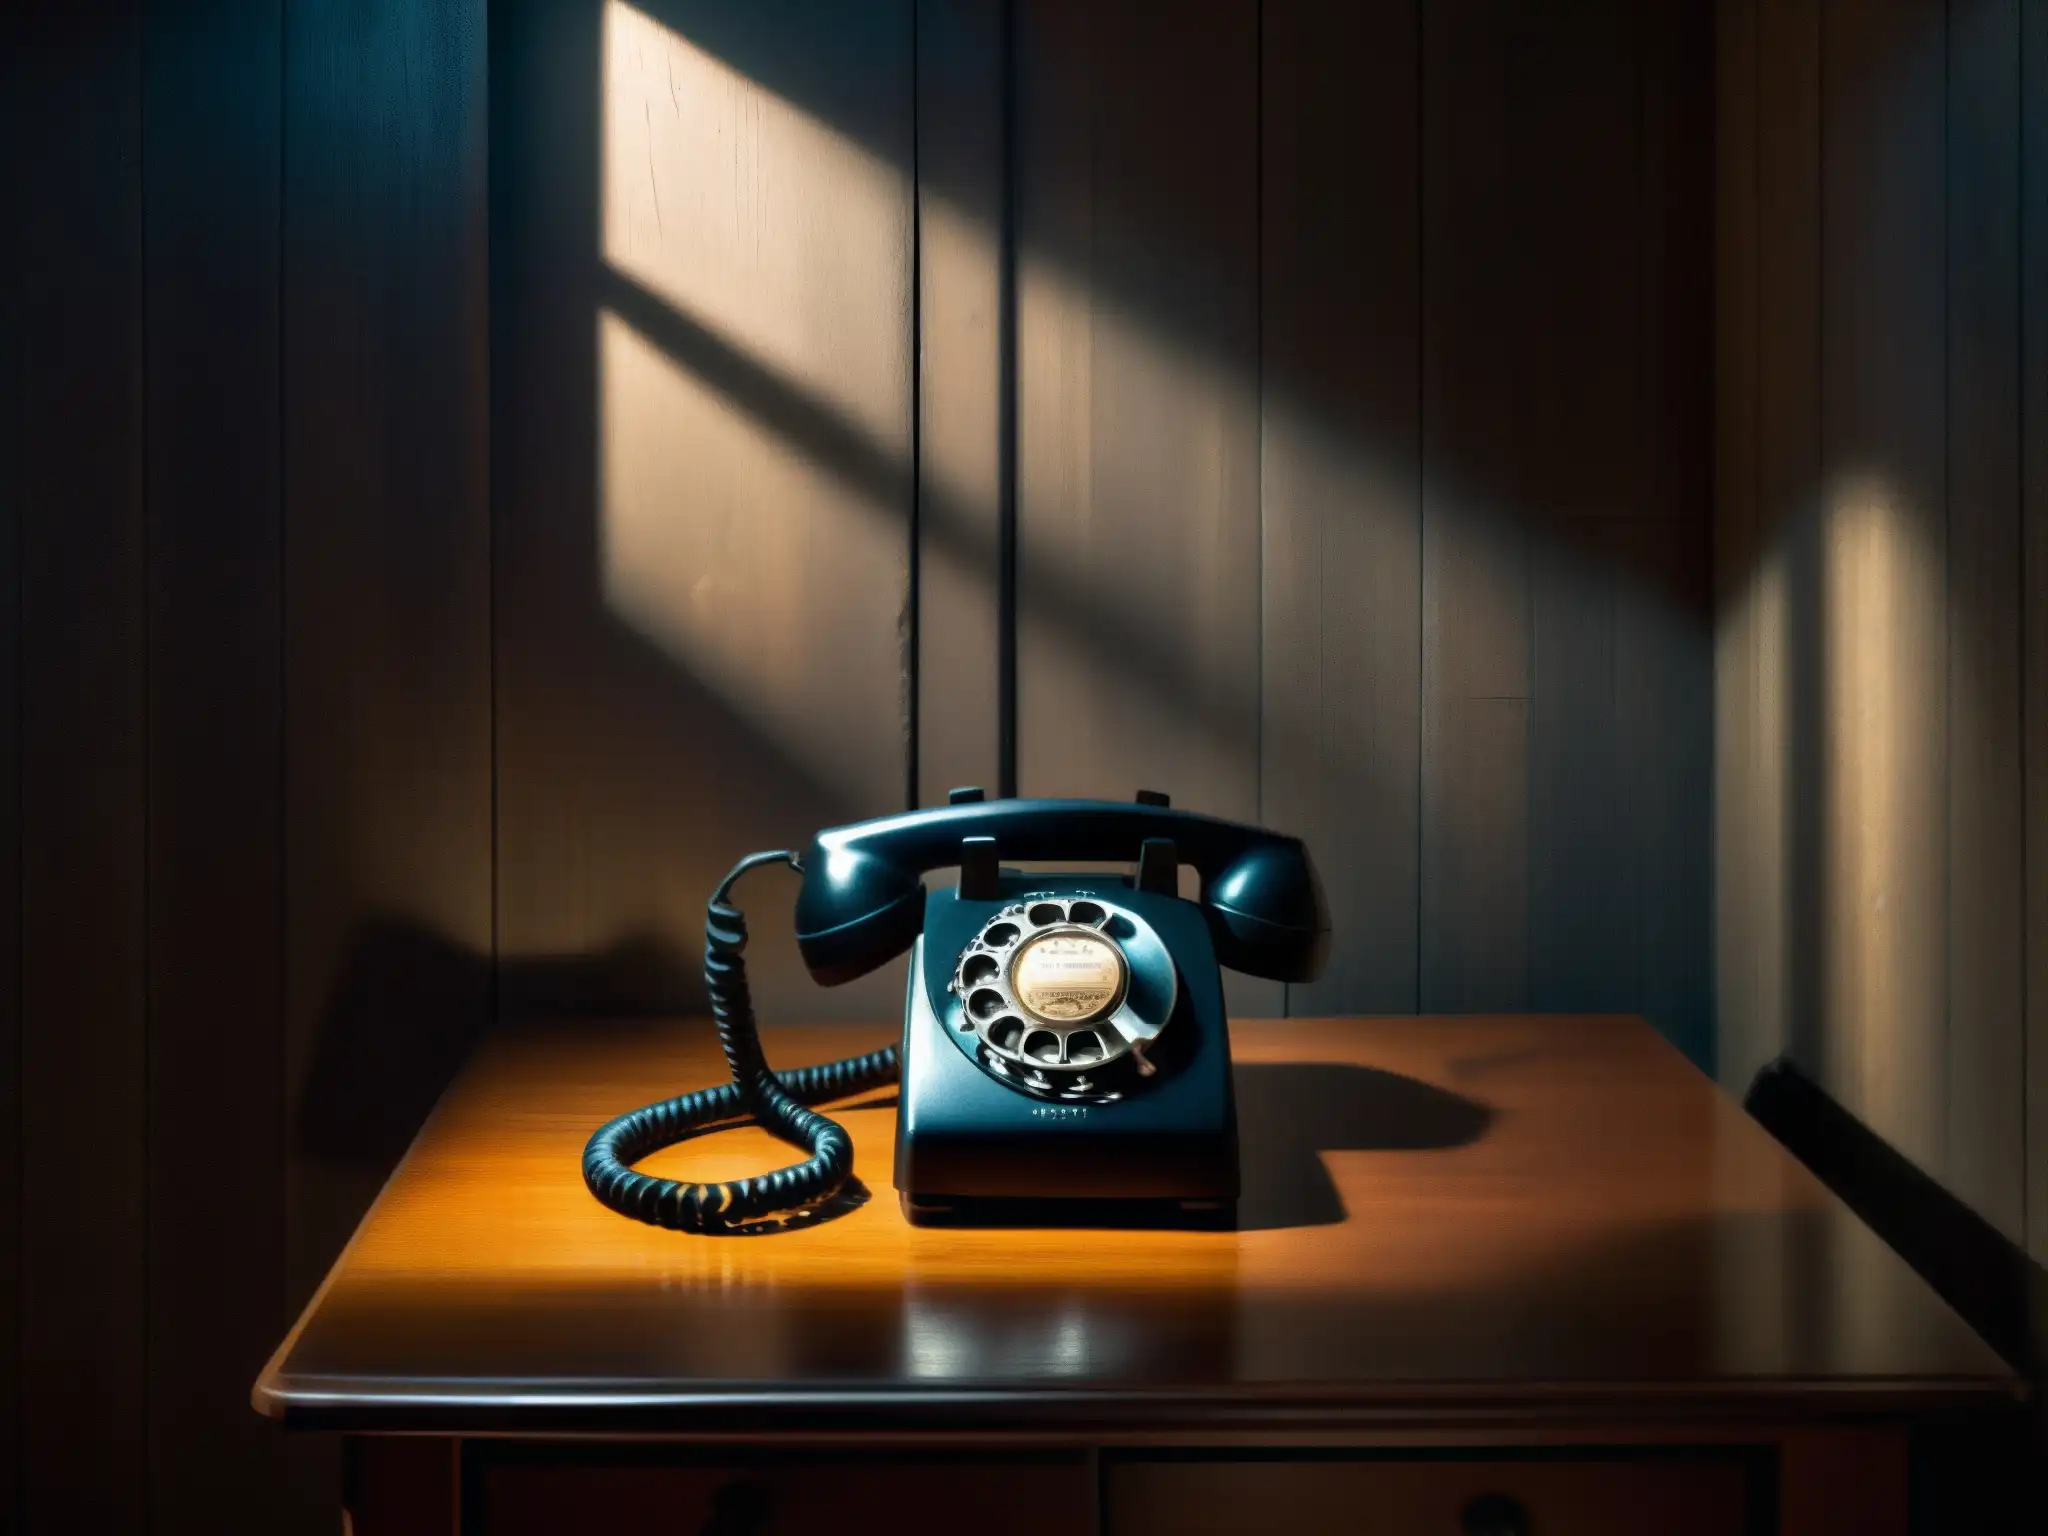 En una habitación sombría, un teléfono antiguo reposa sobre una mesa polvorienta